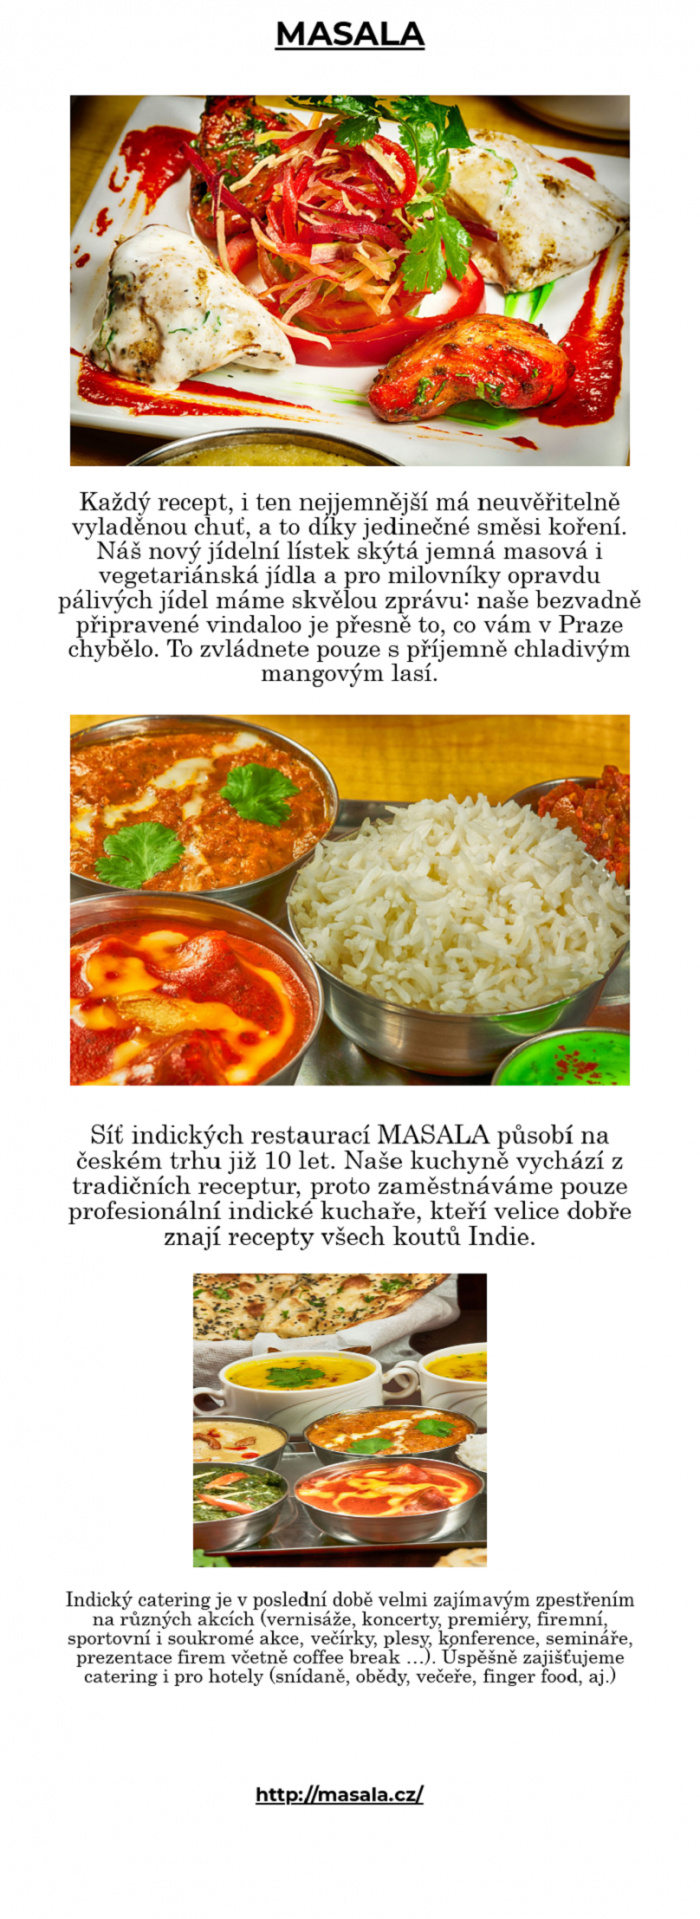 Síť indických restaurací MASALA působí na českém trhu již 10 let. Naše kuchyně vychází z tradičn ...